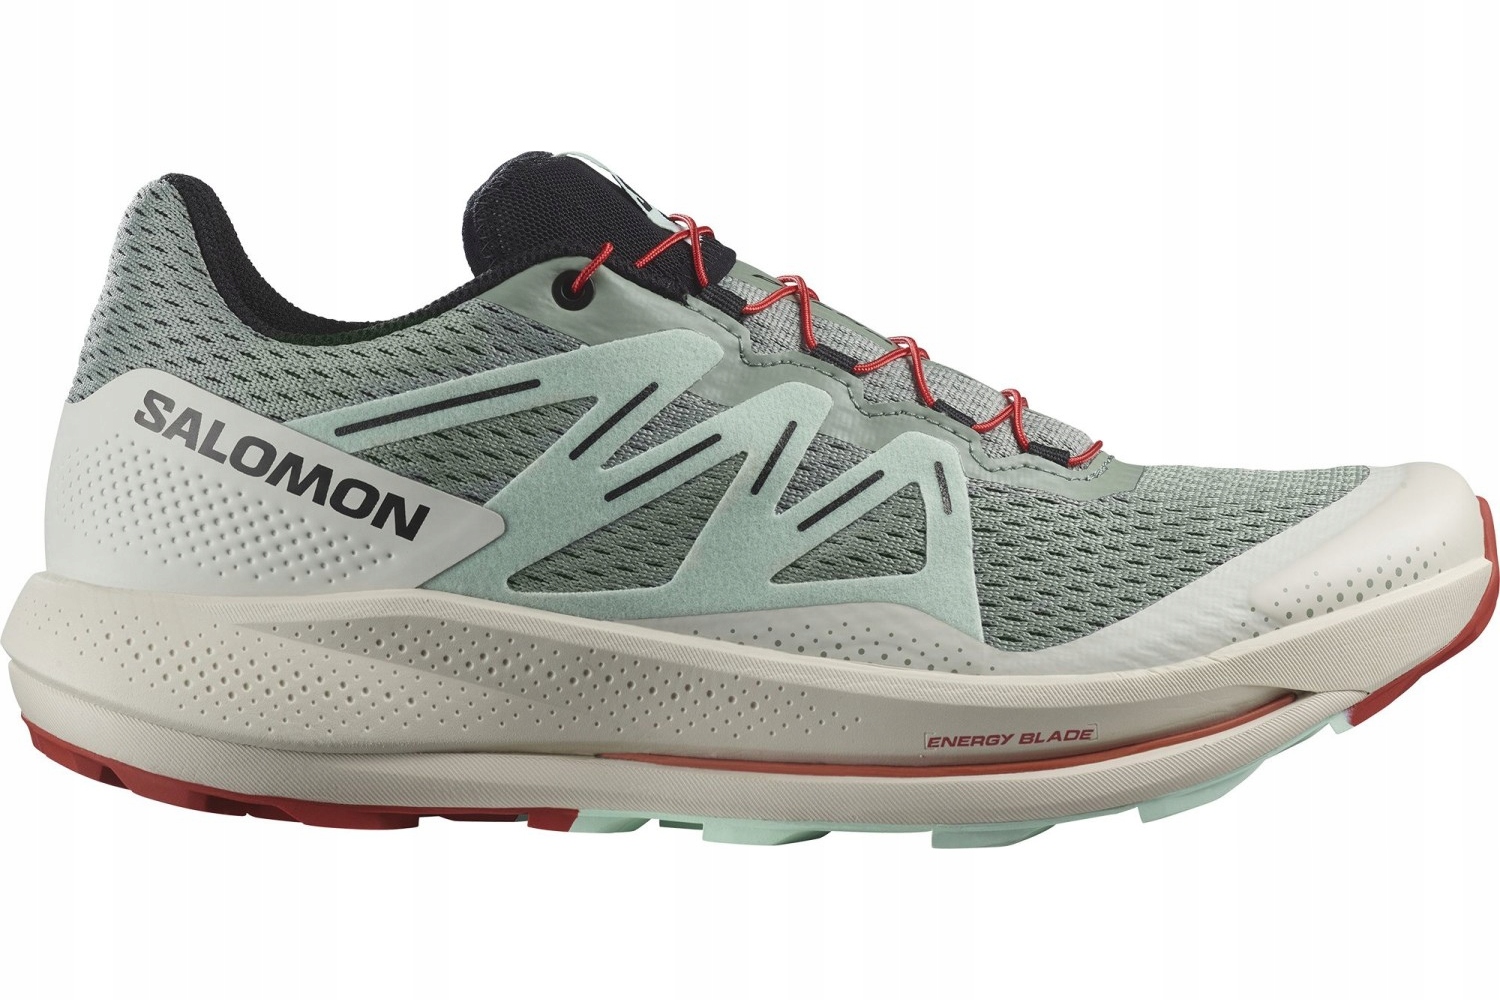 Pánska bežecká obuv na behanie športový tréningový trail SALOMON v teréne 43 1/3